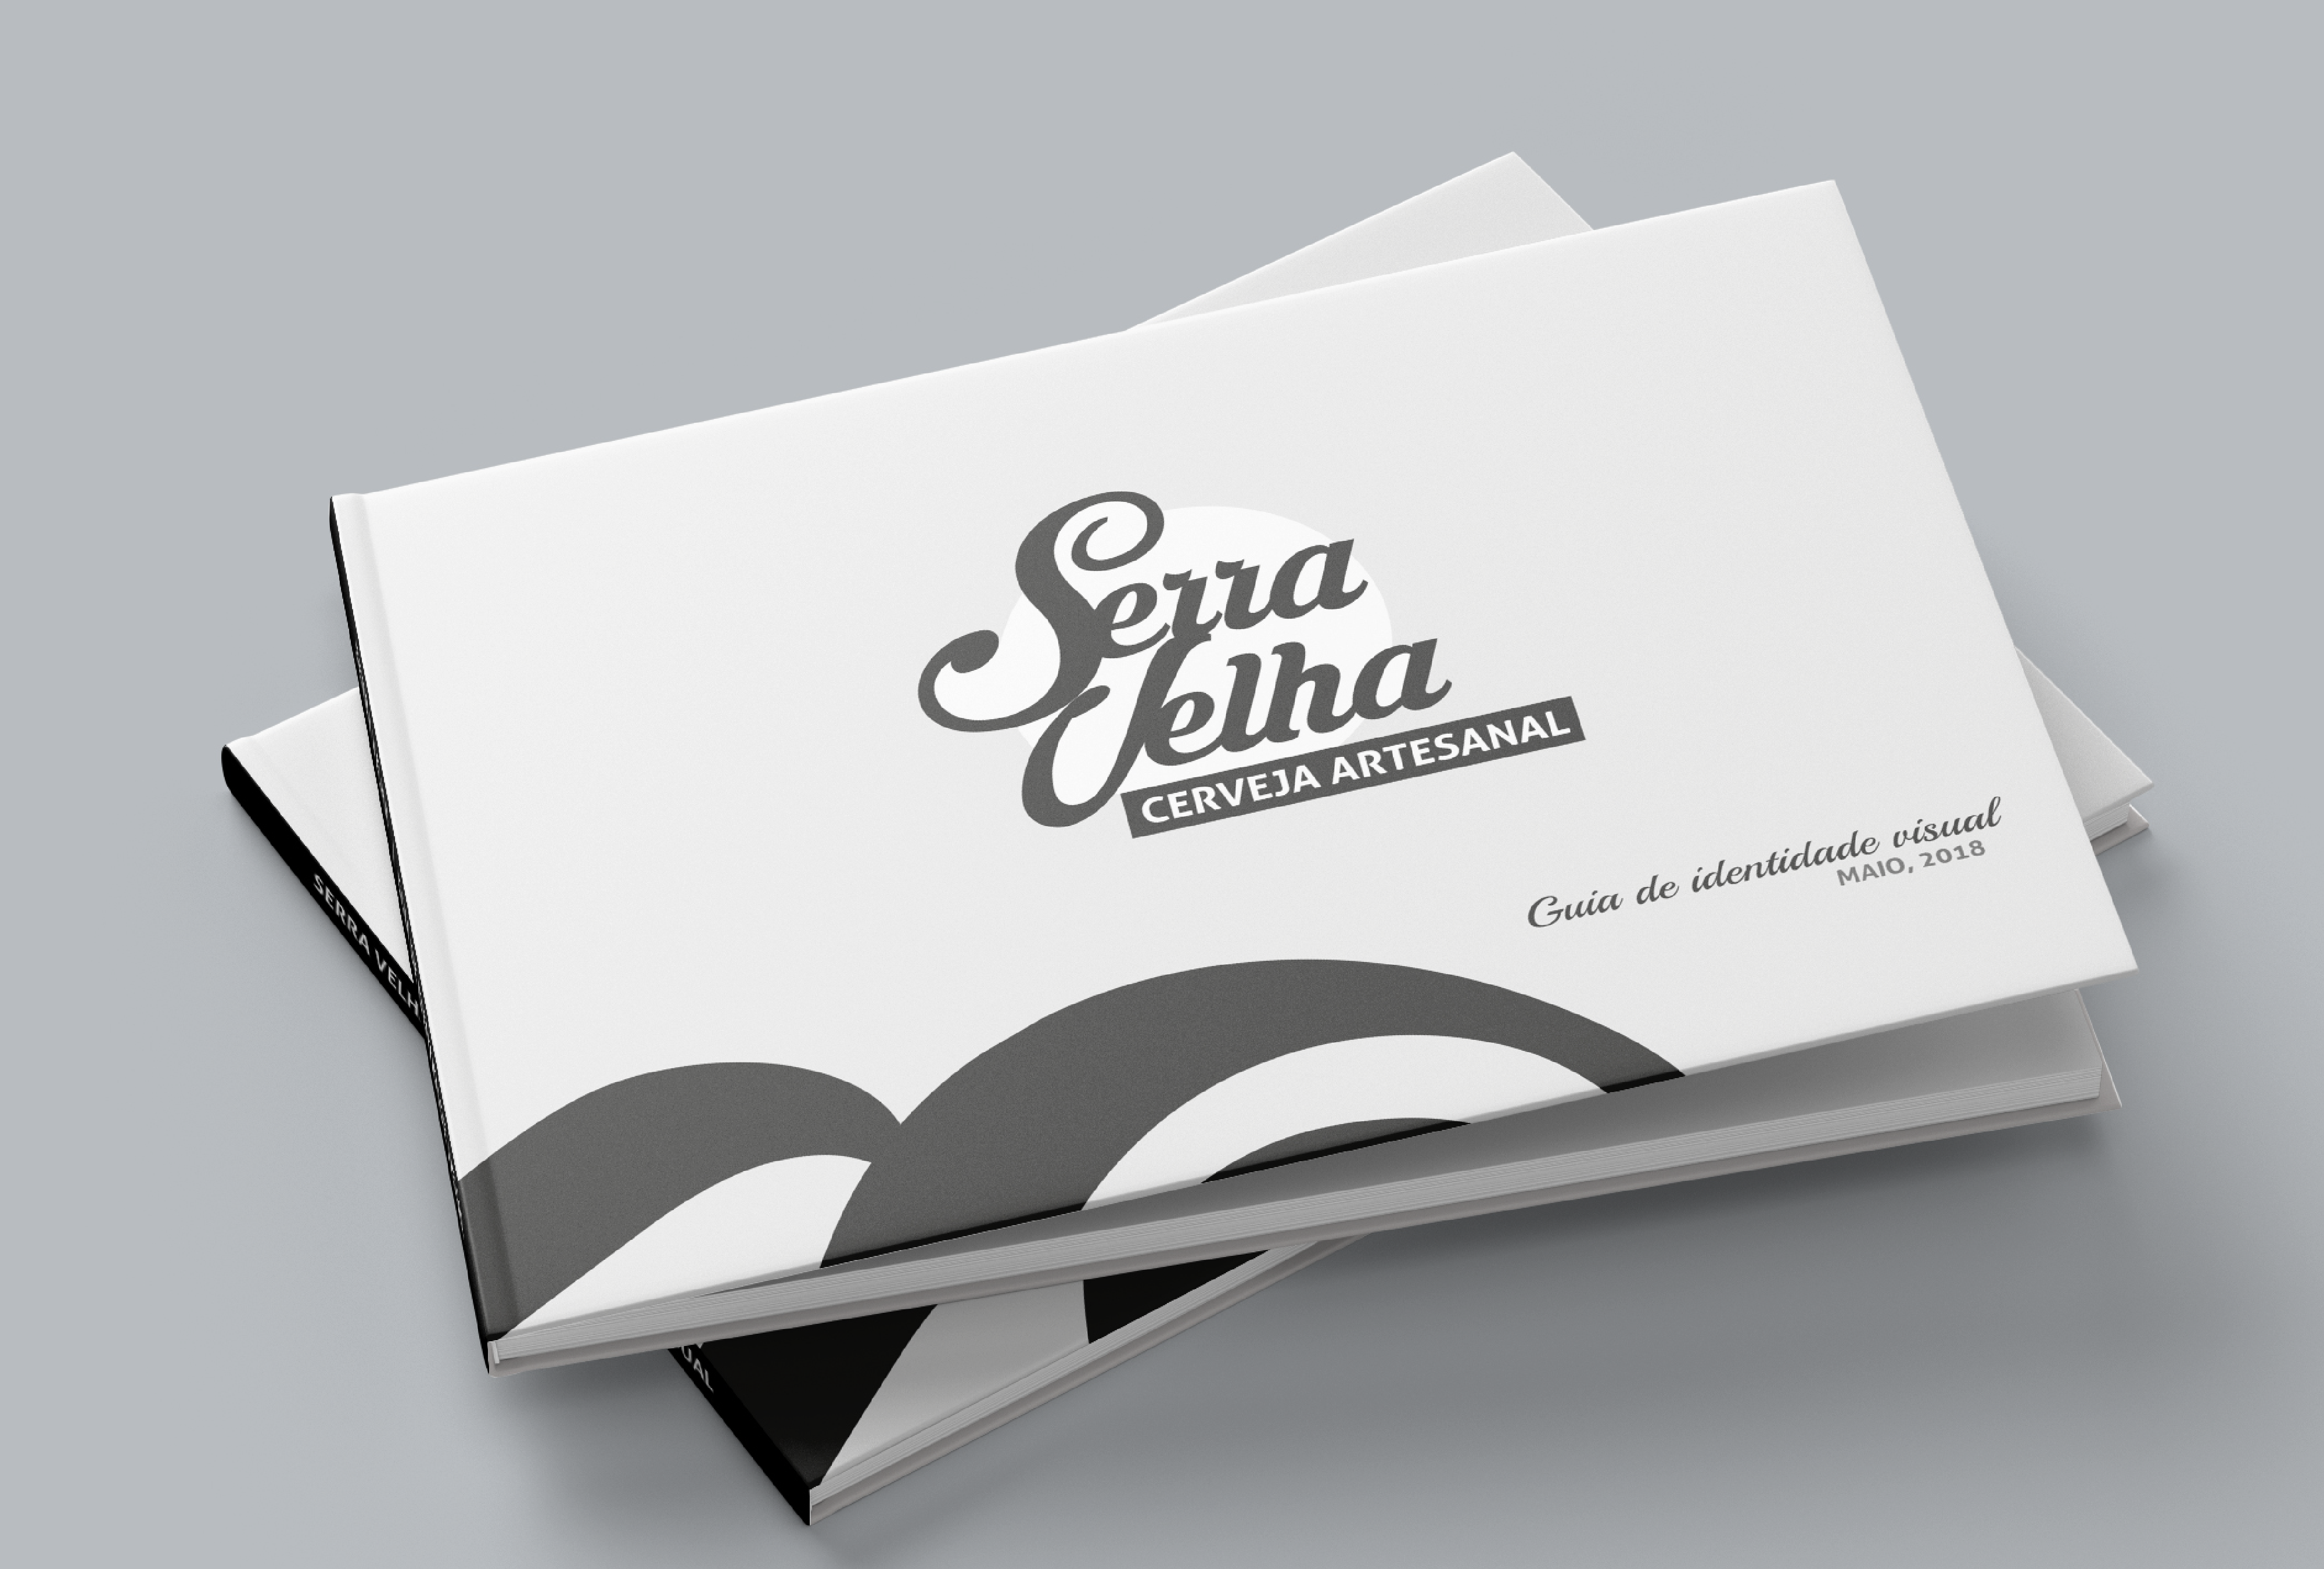 Case Serra velha | EnterDesign